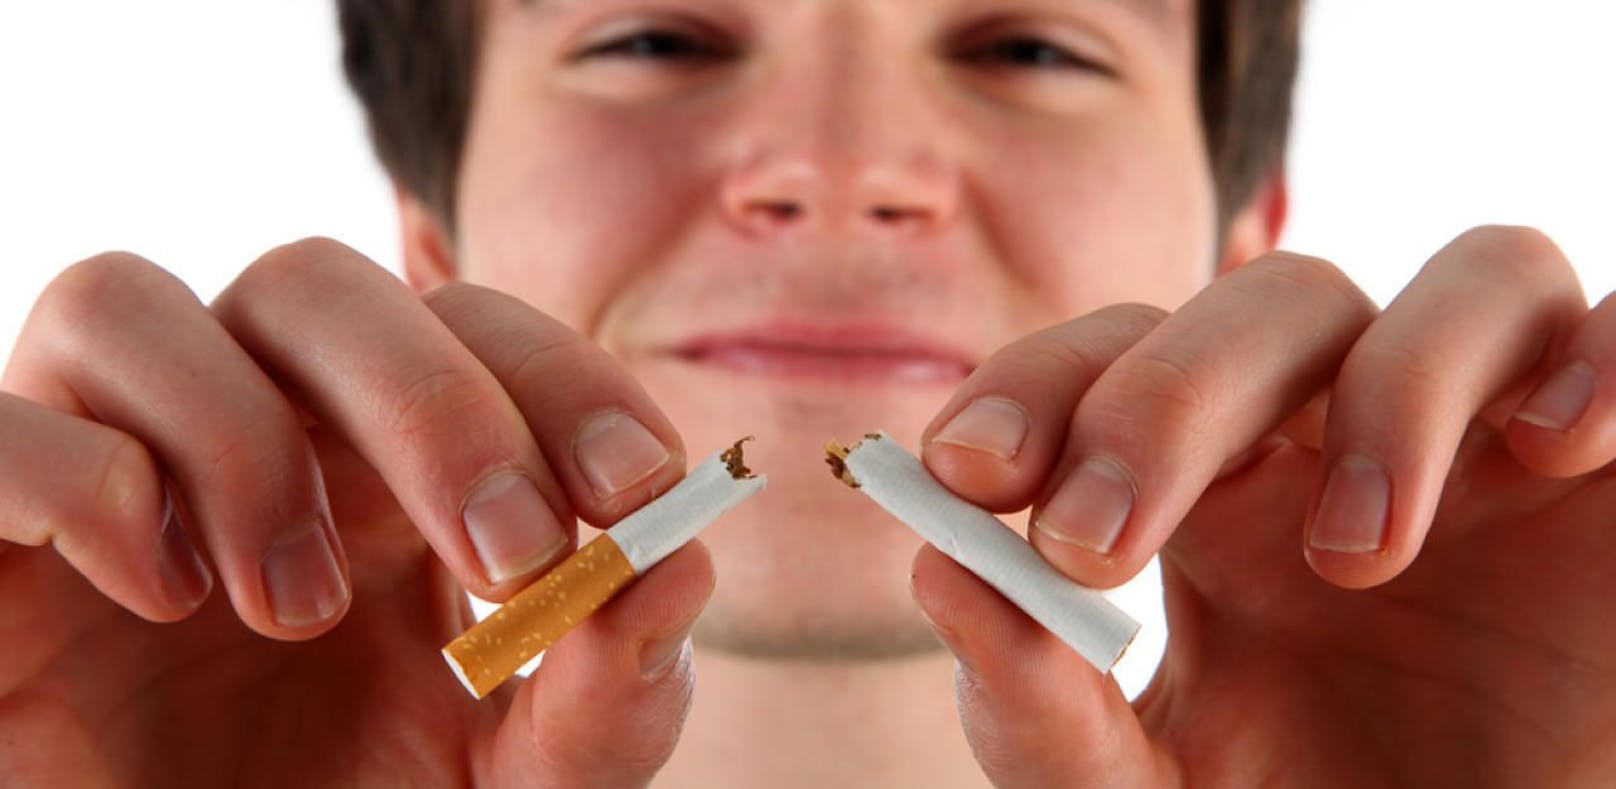 Ab heute Nichtraucher: Das geschieht im Körper